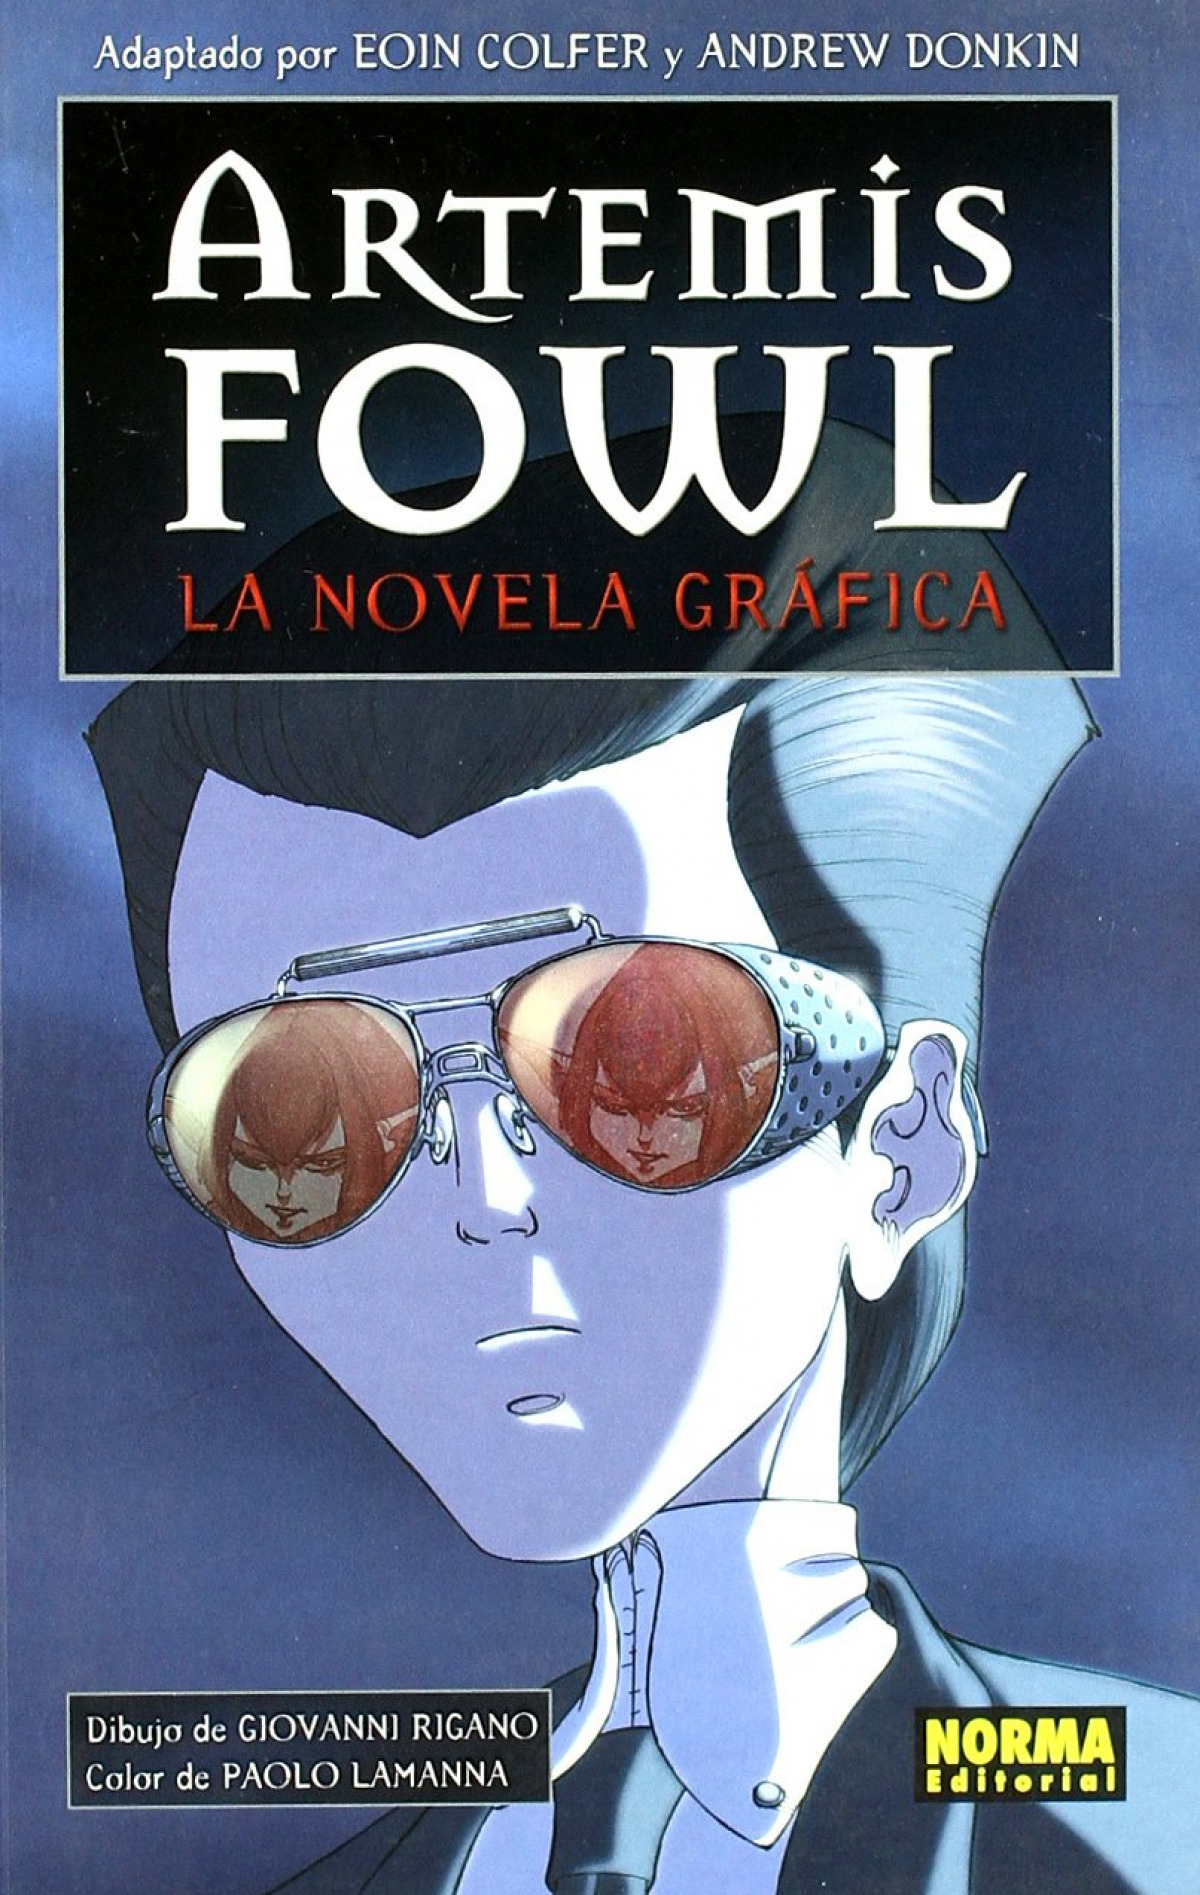 Artemis fowl. la novela grafica - Colfer, Eoin/Donkin, Andrew/Rigano, Giovanni